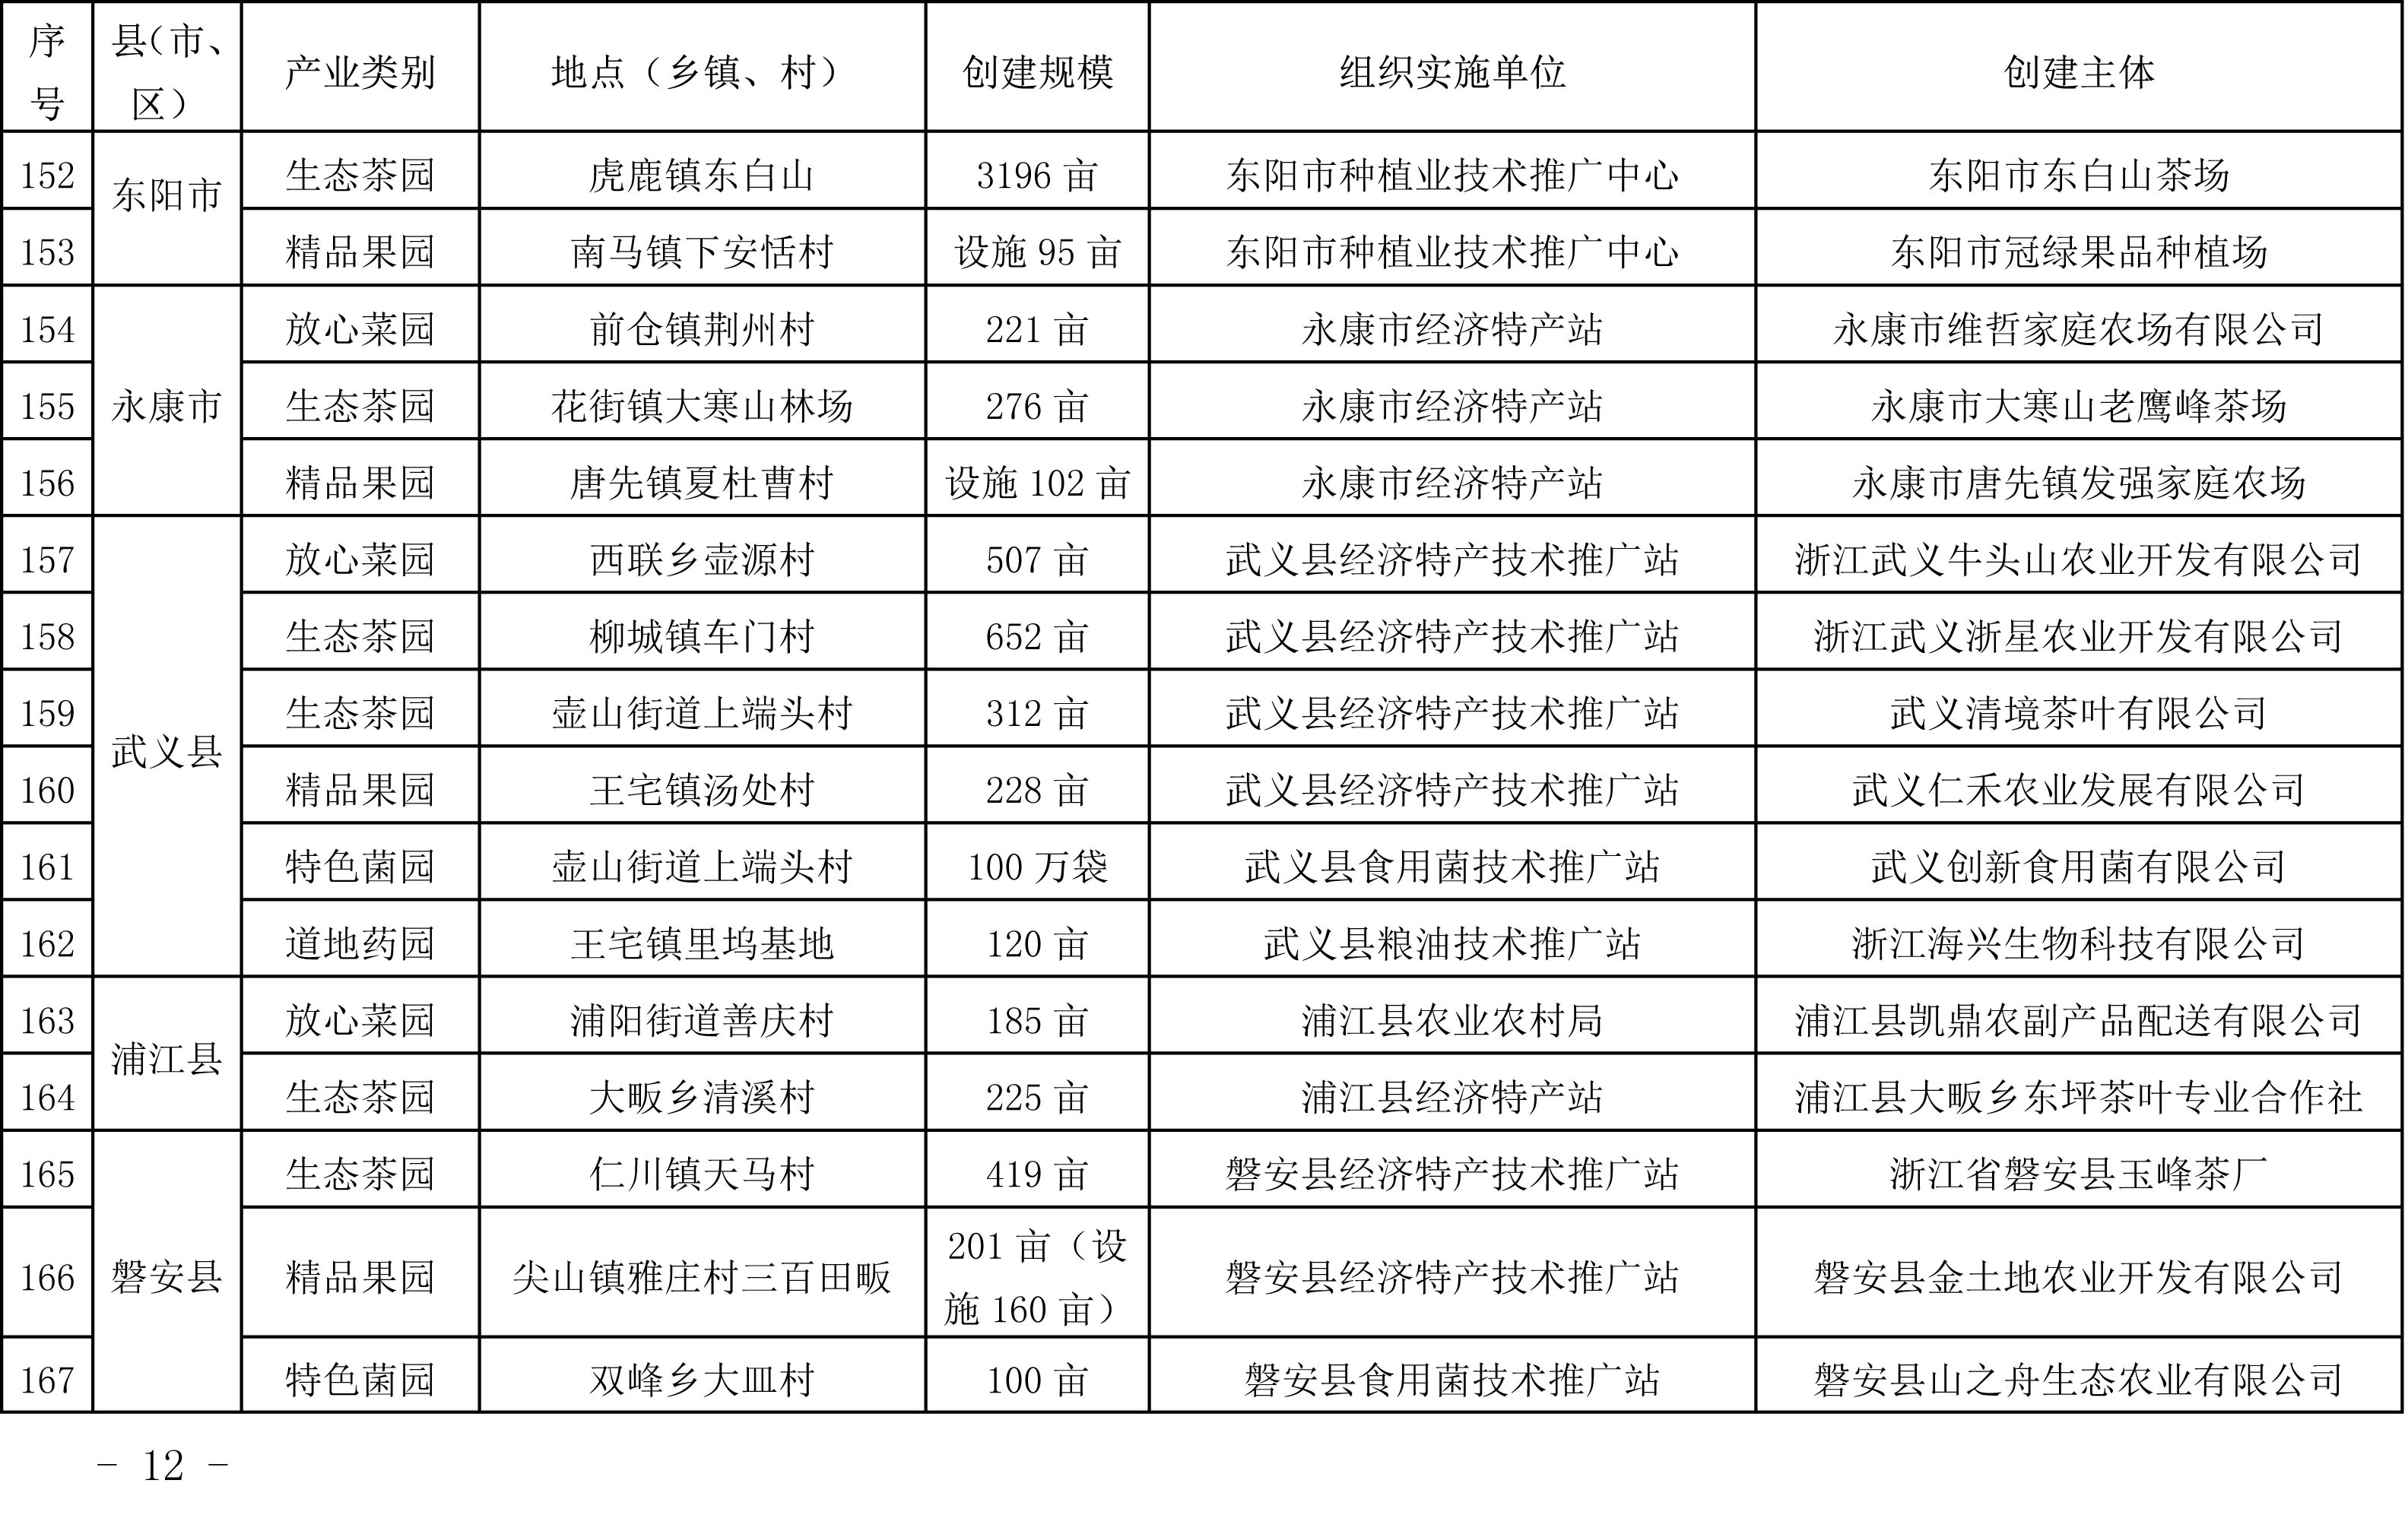 浙江省农业农村厅关于公布2019年度种植业“五园”创建省级示范基地名单的通知(图12)